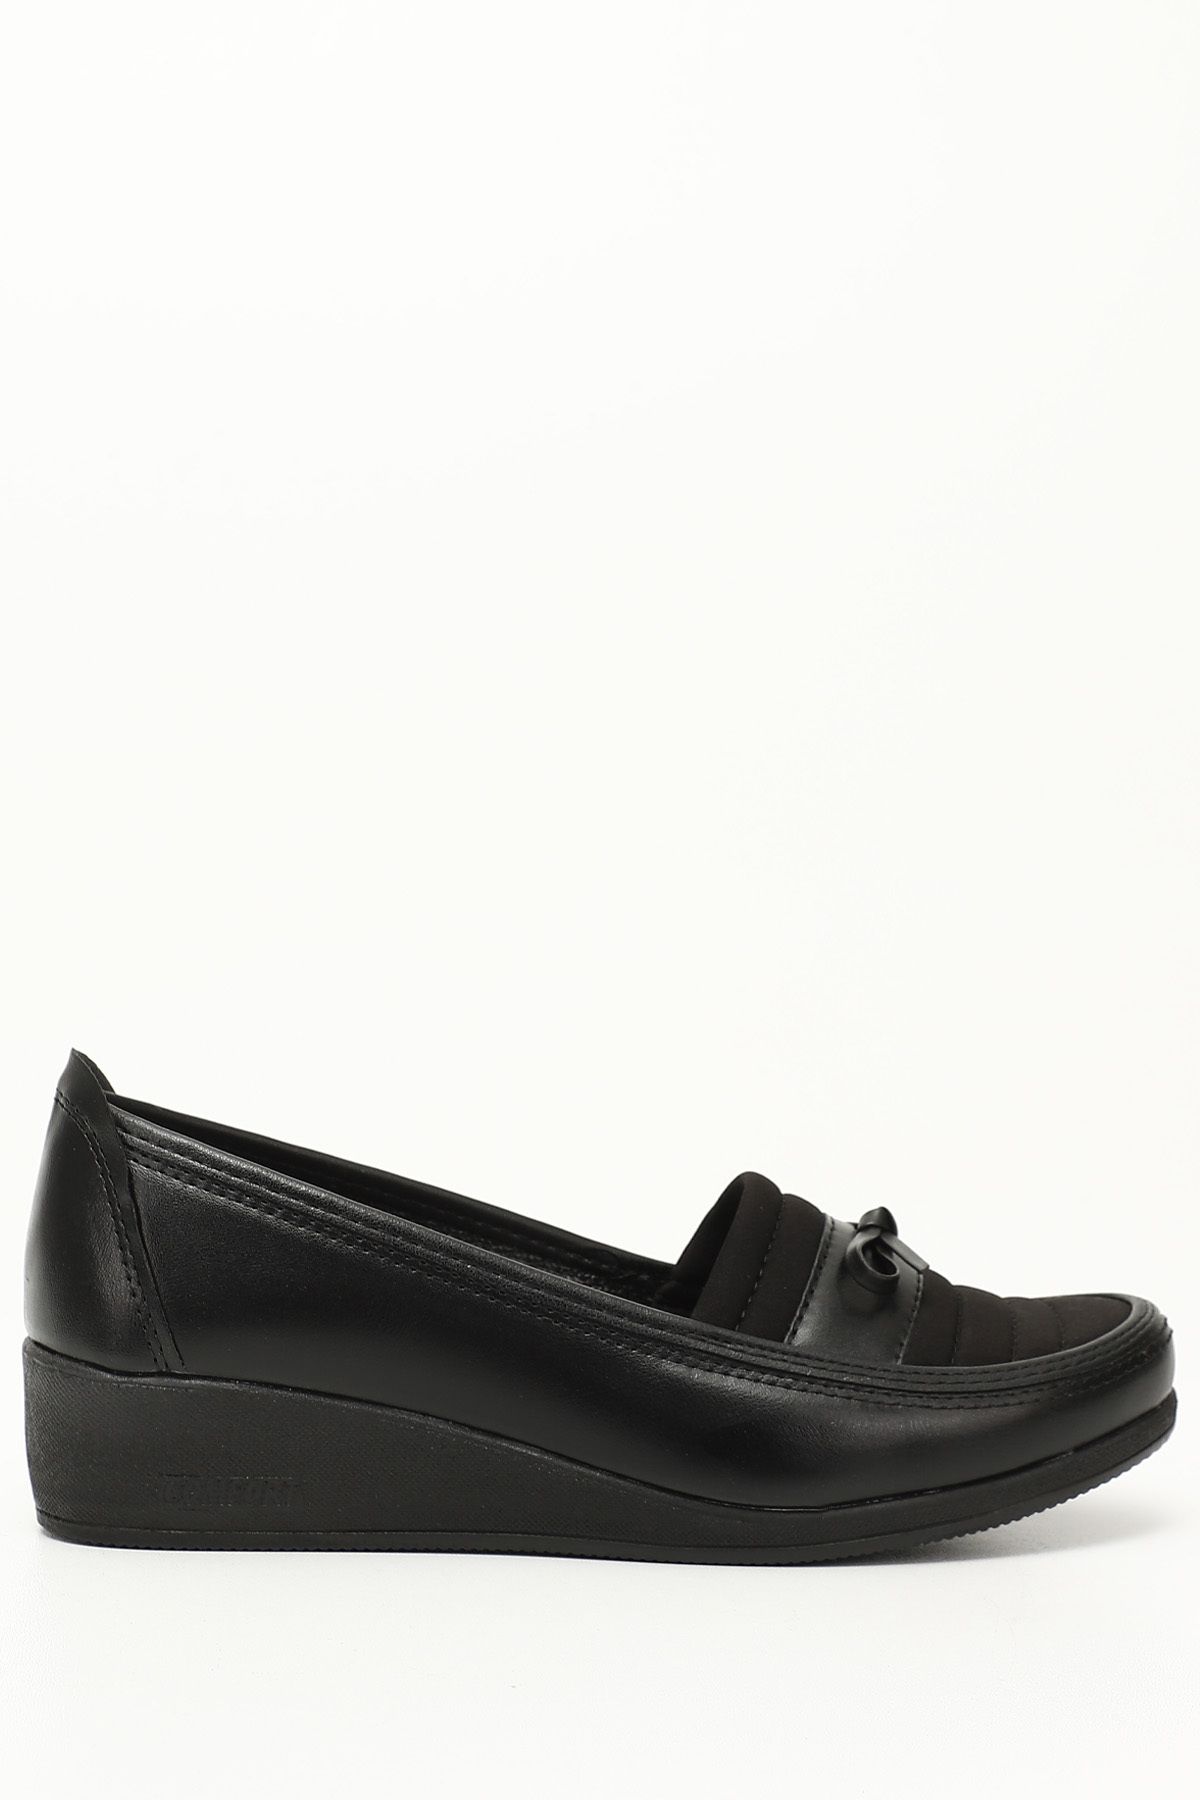 GÖNDERİ(R) Siyah Gön Yuvarlak Burun Dolgu Taban Fiyonklu Kadın Günlük Ayakkabı 42090